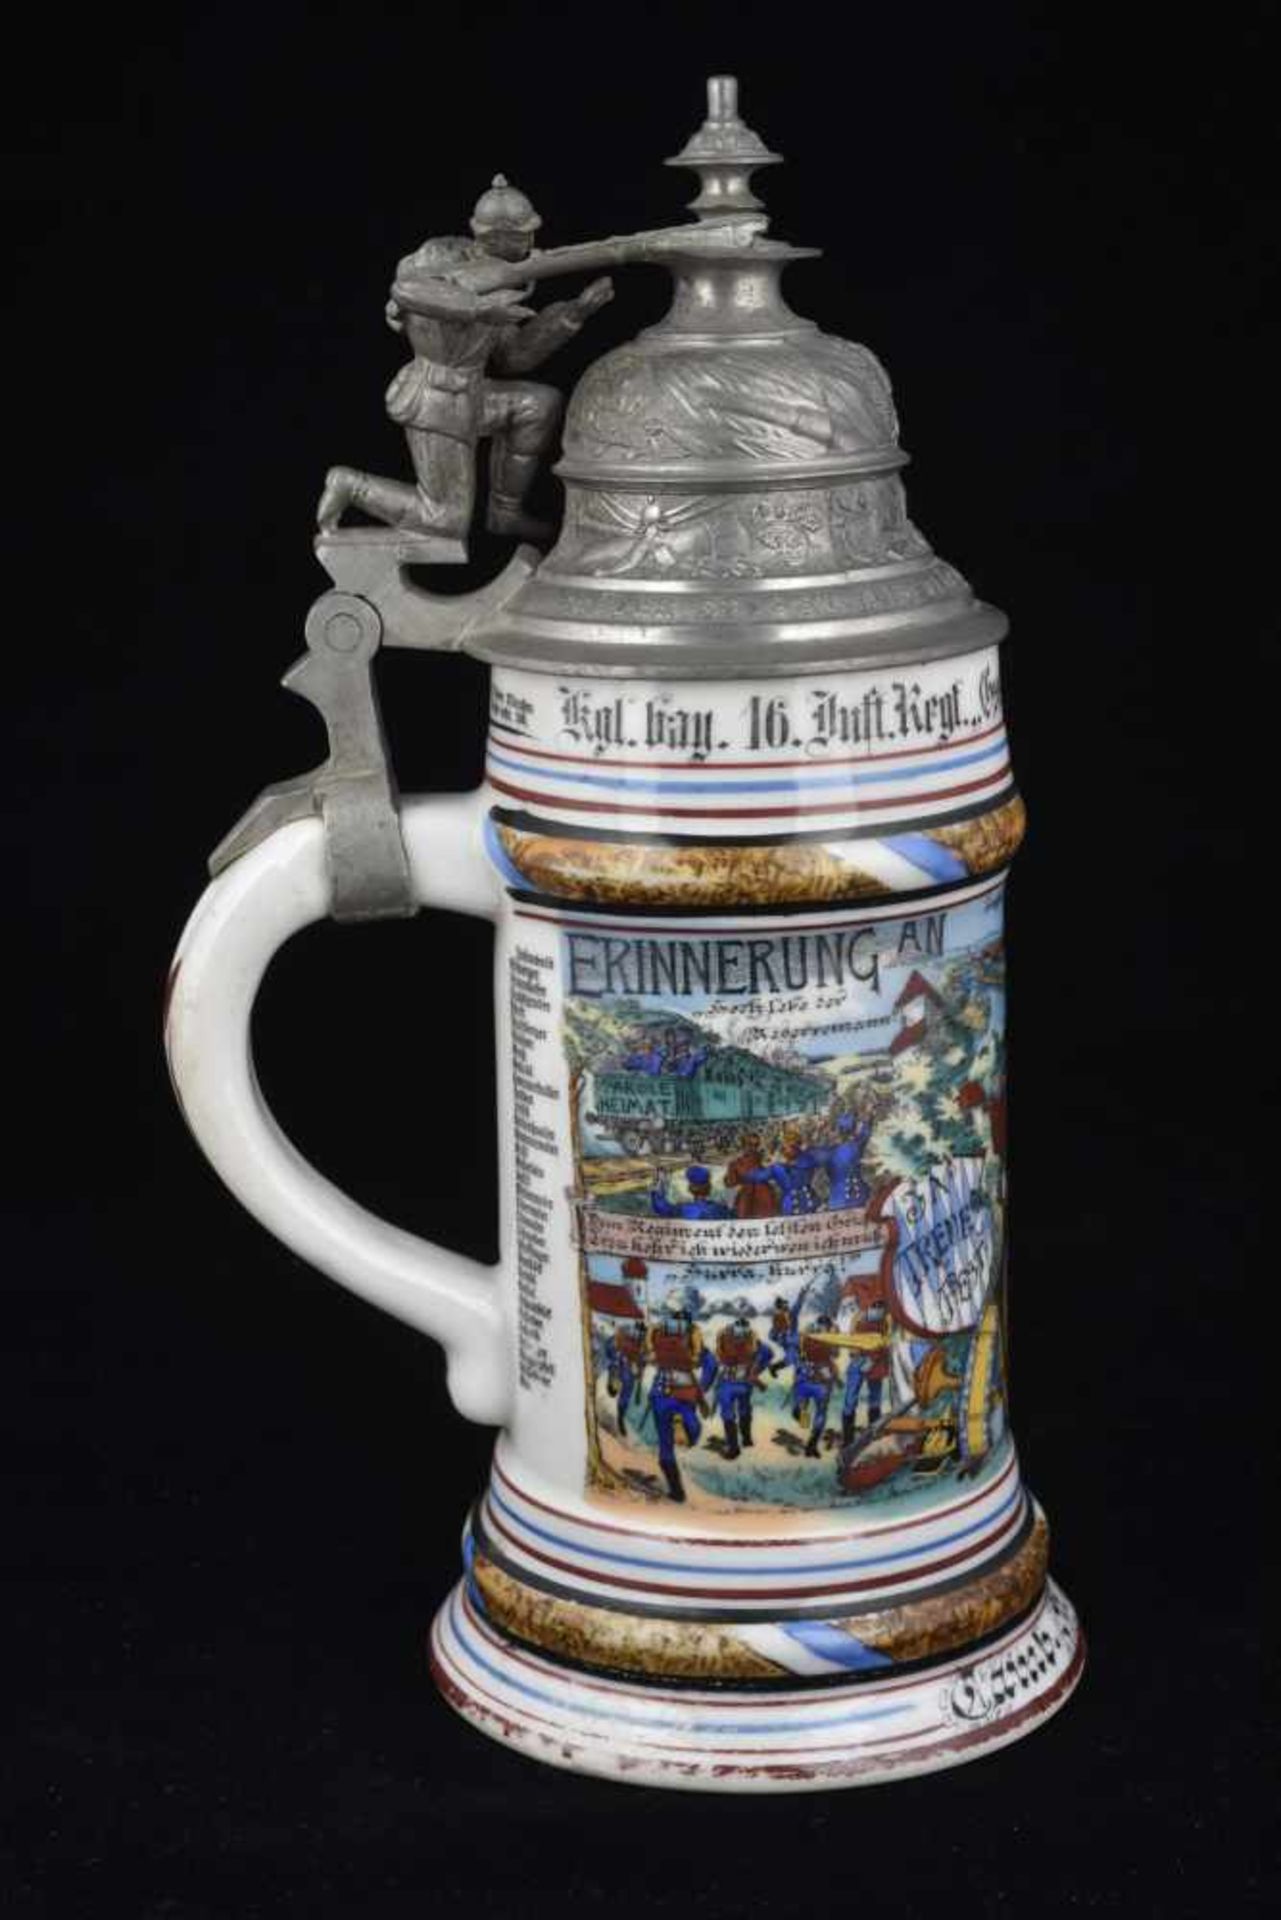 Chope de réserviste de l'Infanterie. Chope en porcelaine d'un demi-litre attribuée à : Kgl. Bay. - Image 3 of 4